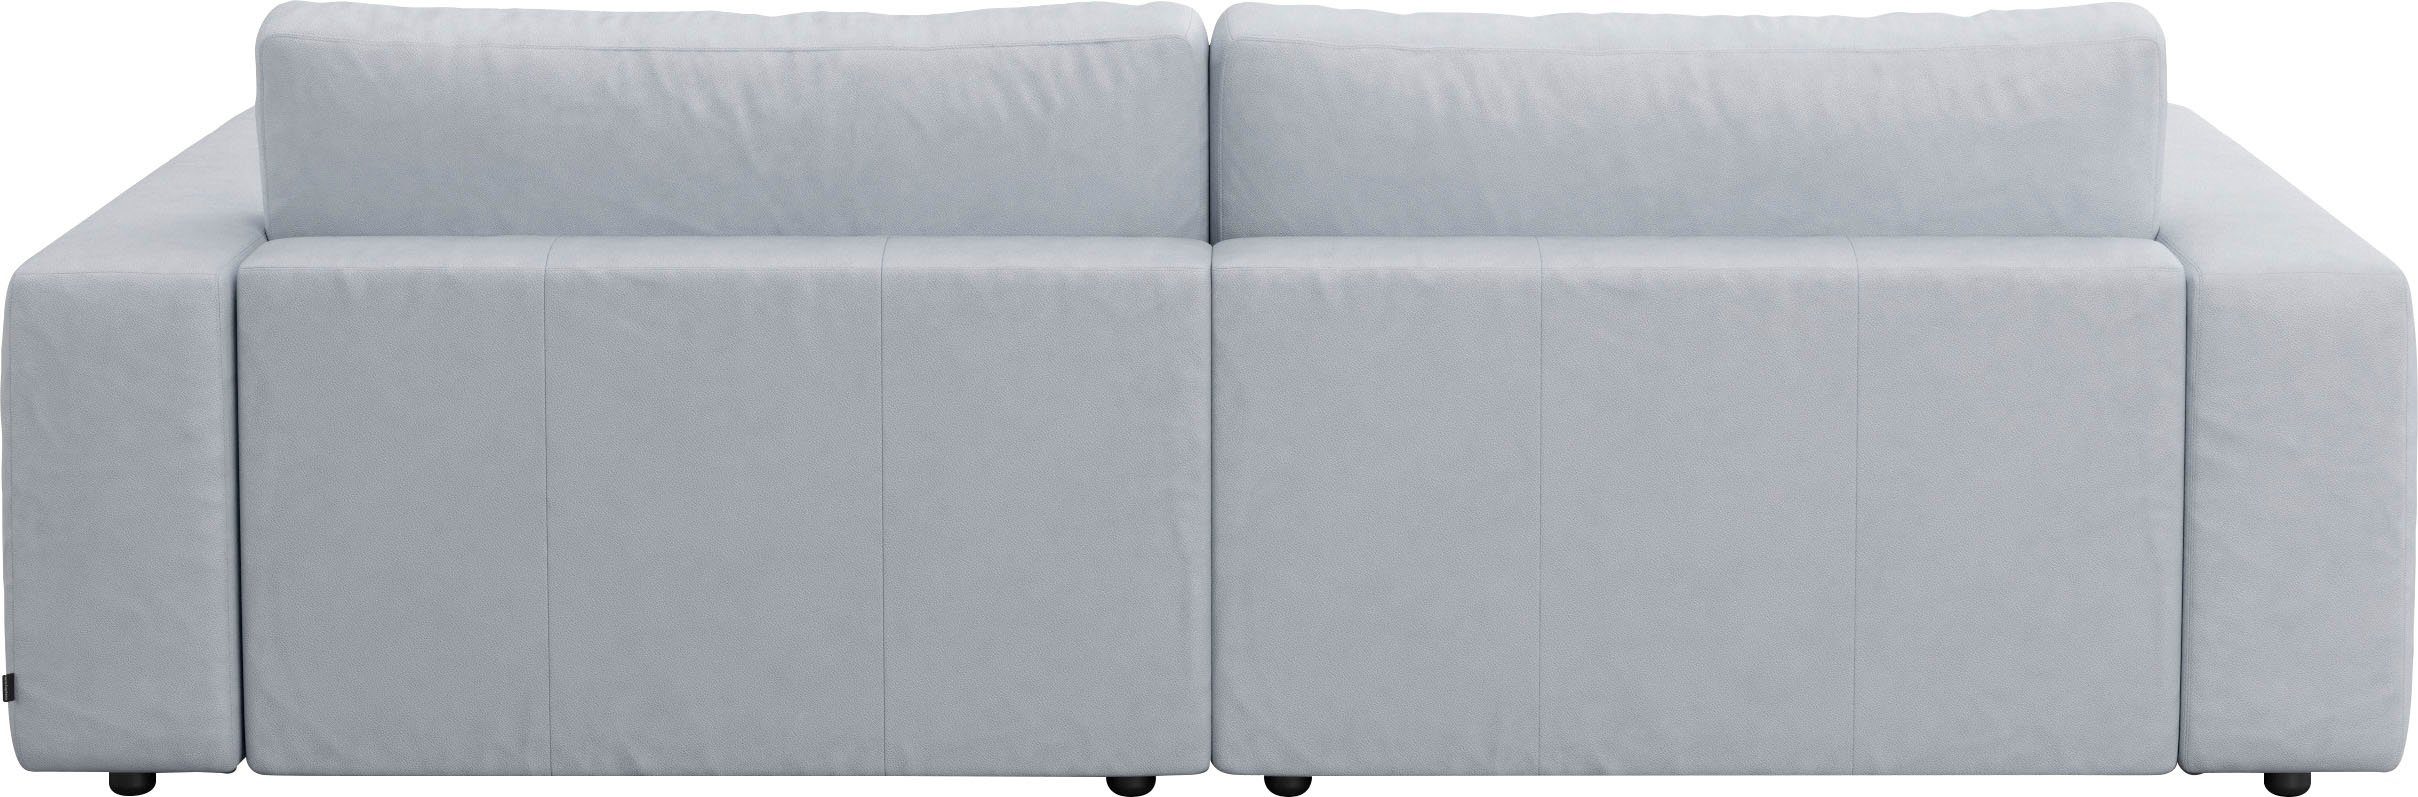 GALLERY M branded by unterschiedlichen Nähten, 4 LUCIA, Musterring Big-Sofa Qualitäten in vielen 2,5-Sitzer und